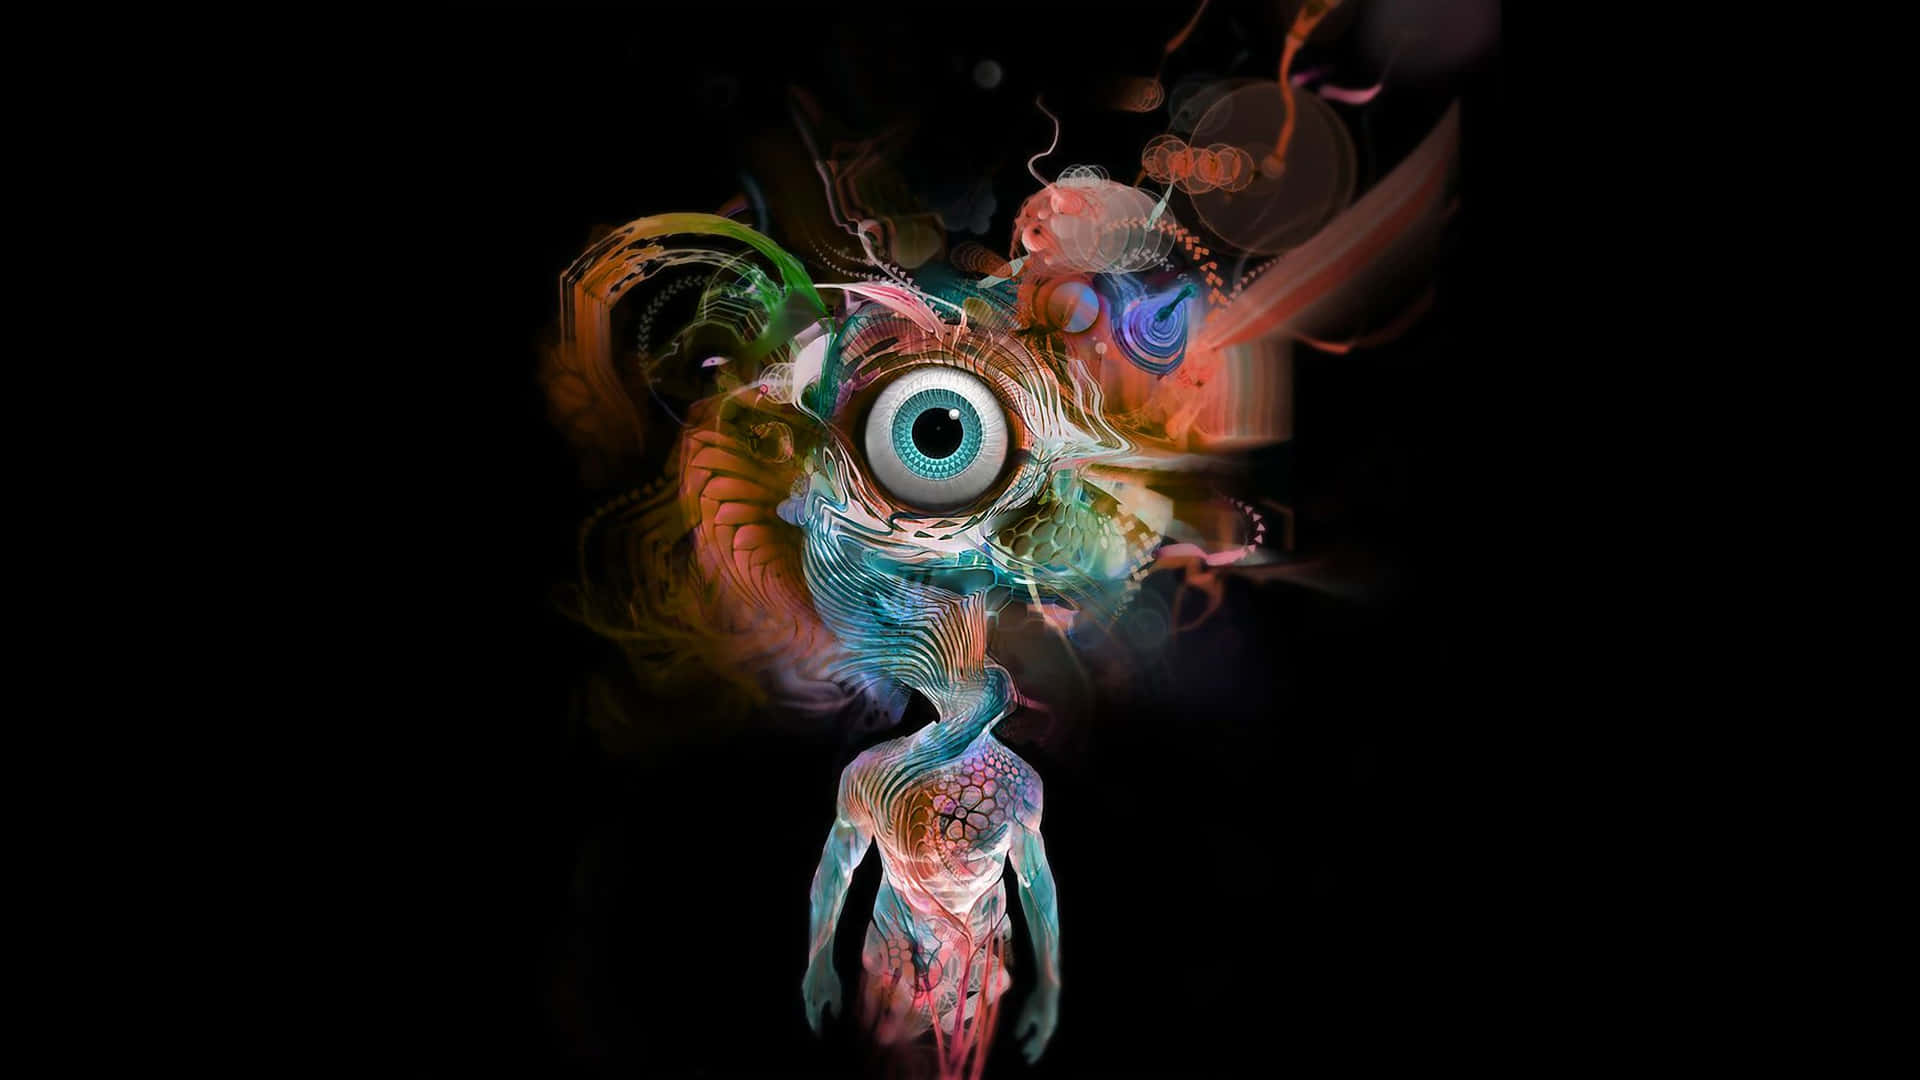 Et farverigt billede af en person med et farverigt øjendesign Wallpaper